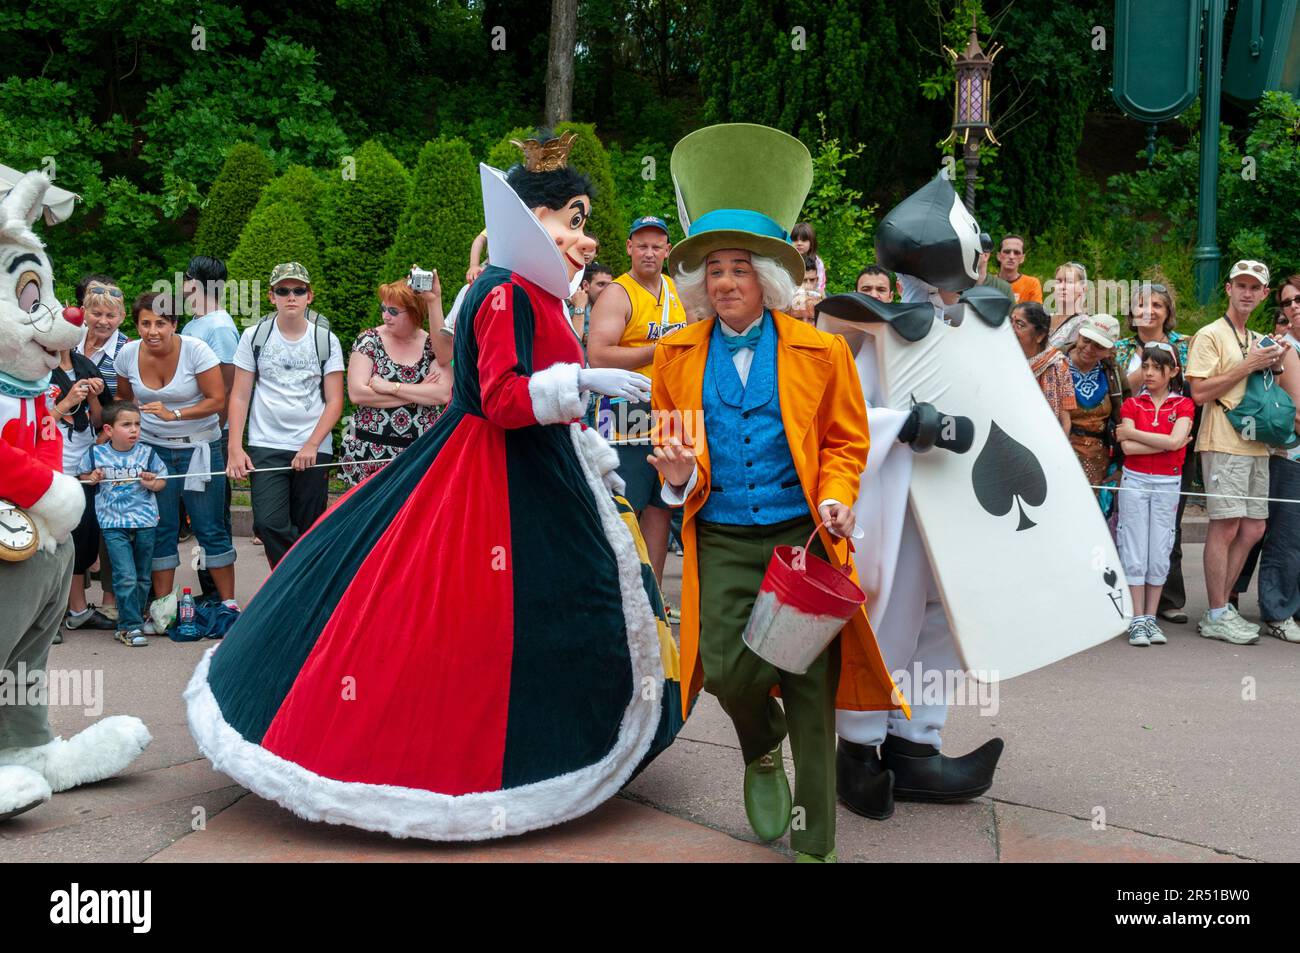 Paris, France, Parcs à thème, personnes visitant Disneyland Paris, employé en costume de personnage Entertaking foule à Disney Parade Banque D'Images